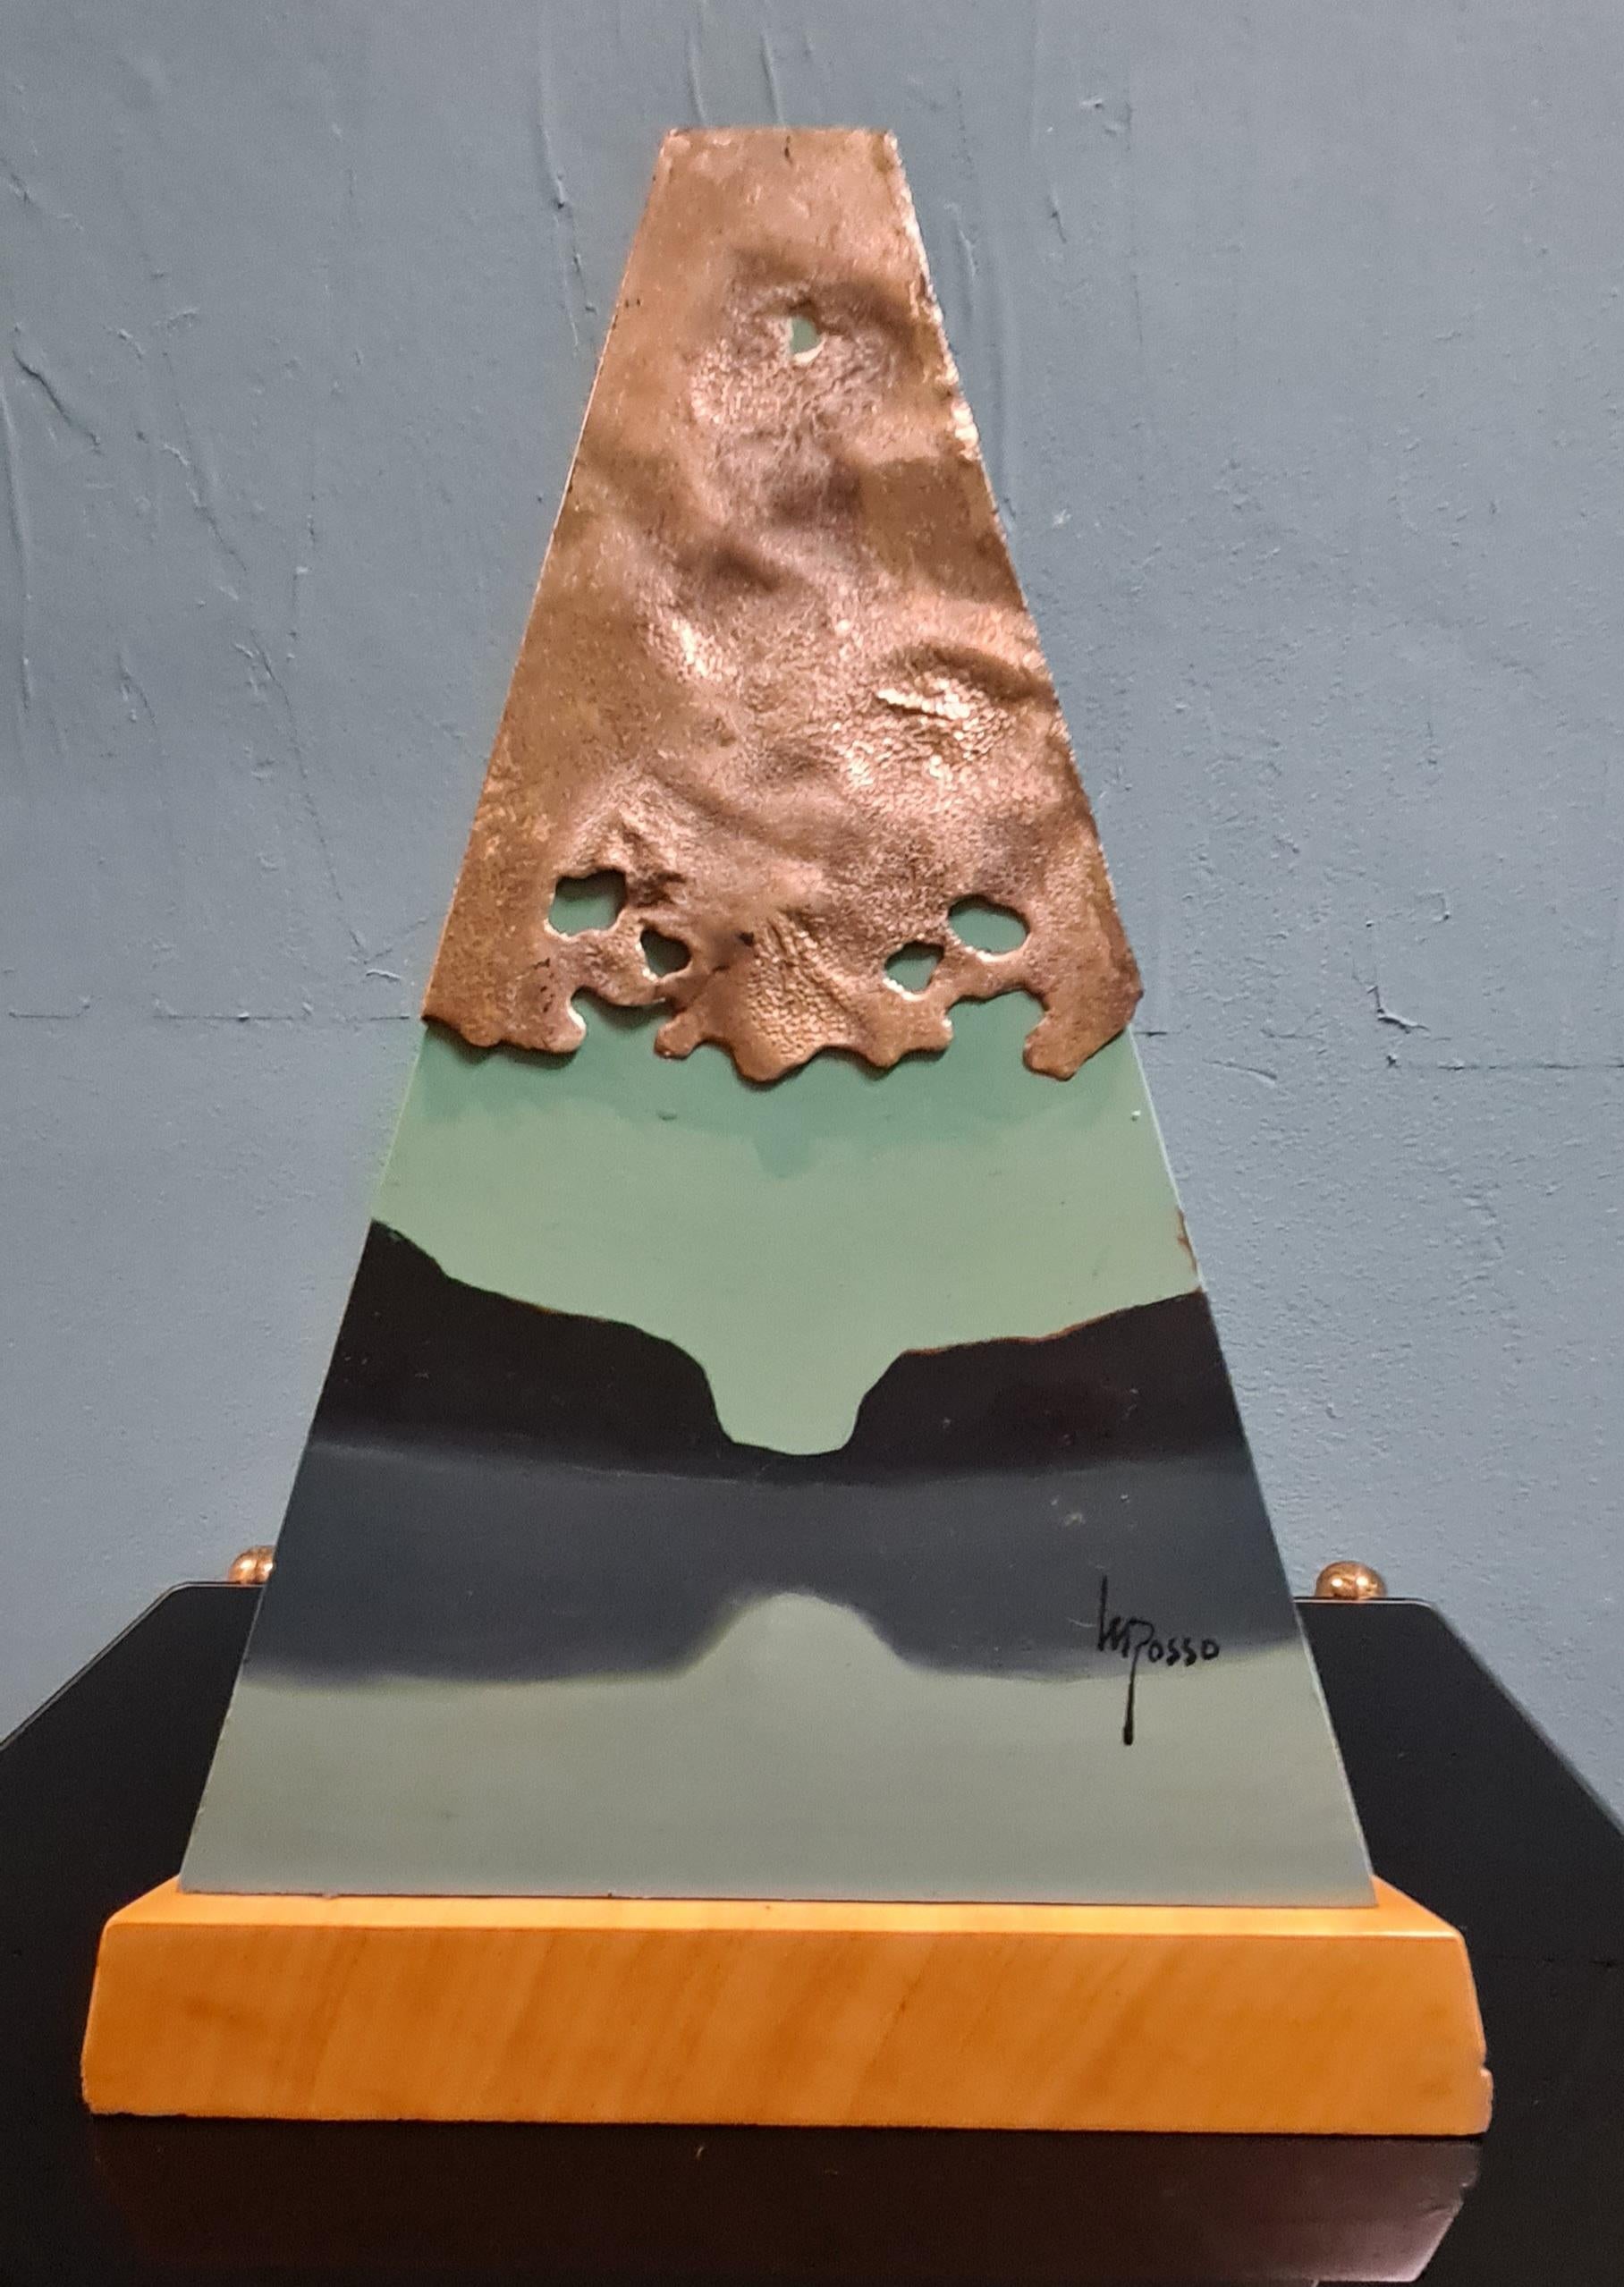 Skulptur im metaphysischen Stil, signiert vom Künstler Mario Rosso.

Die Skulptur hat einen dreieckigen Holzsockel, auf dem eine bemalte Metallpyramide steht, die mit Silber und einem großen Quarzkristall verziert ist.

Die metaphysische Malerei auf